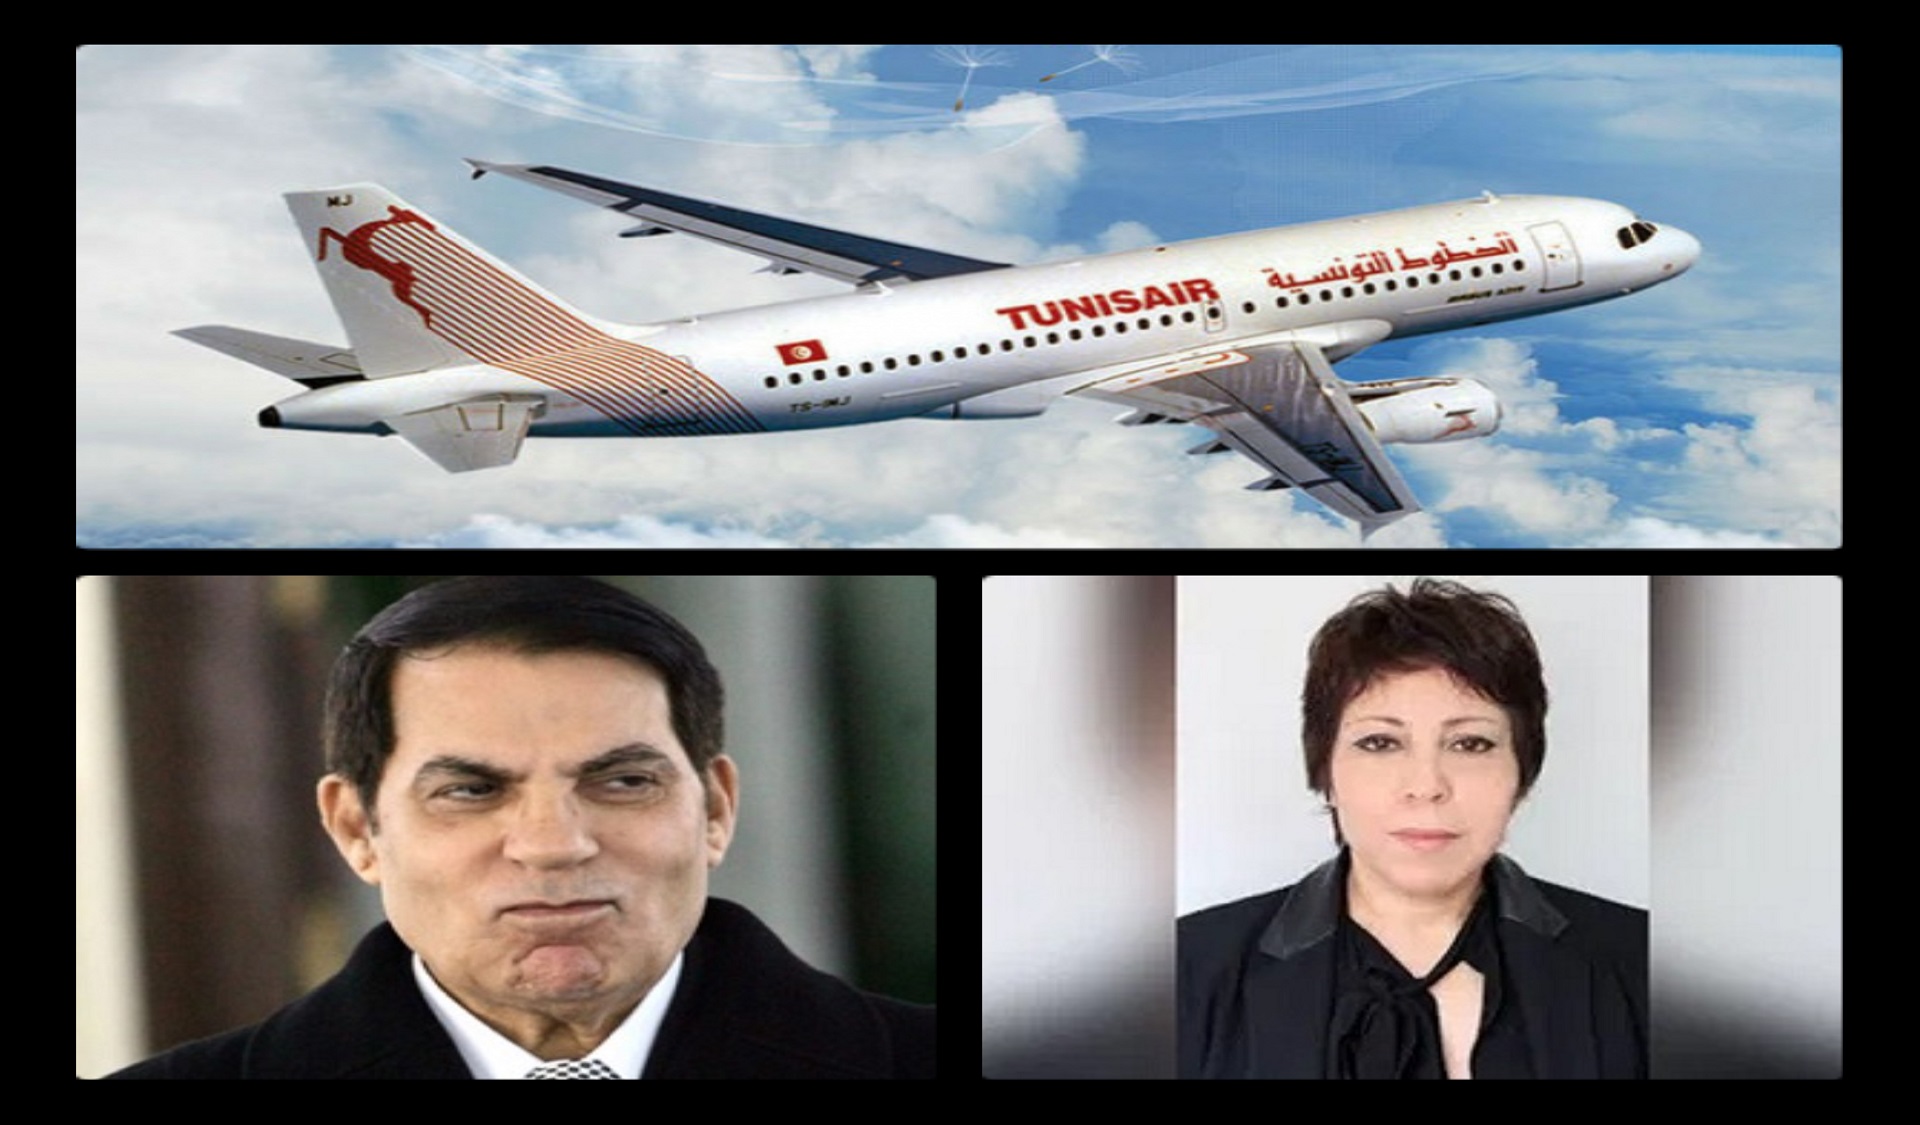 Emplois fictifs à Tunisair : bienvenue à bord du vol Saloua Mlika